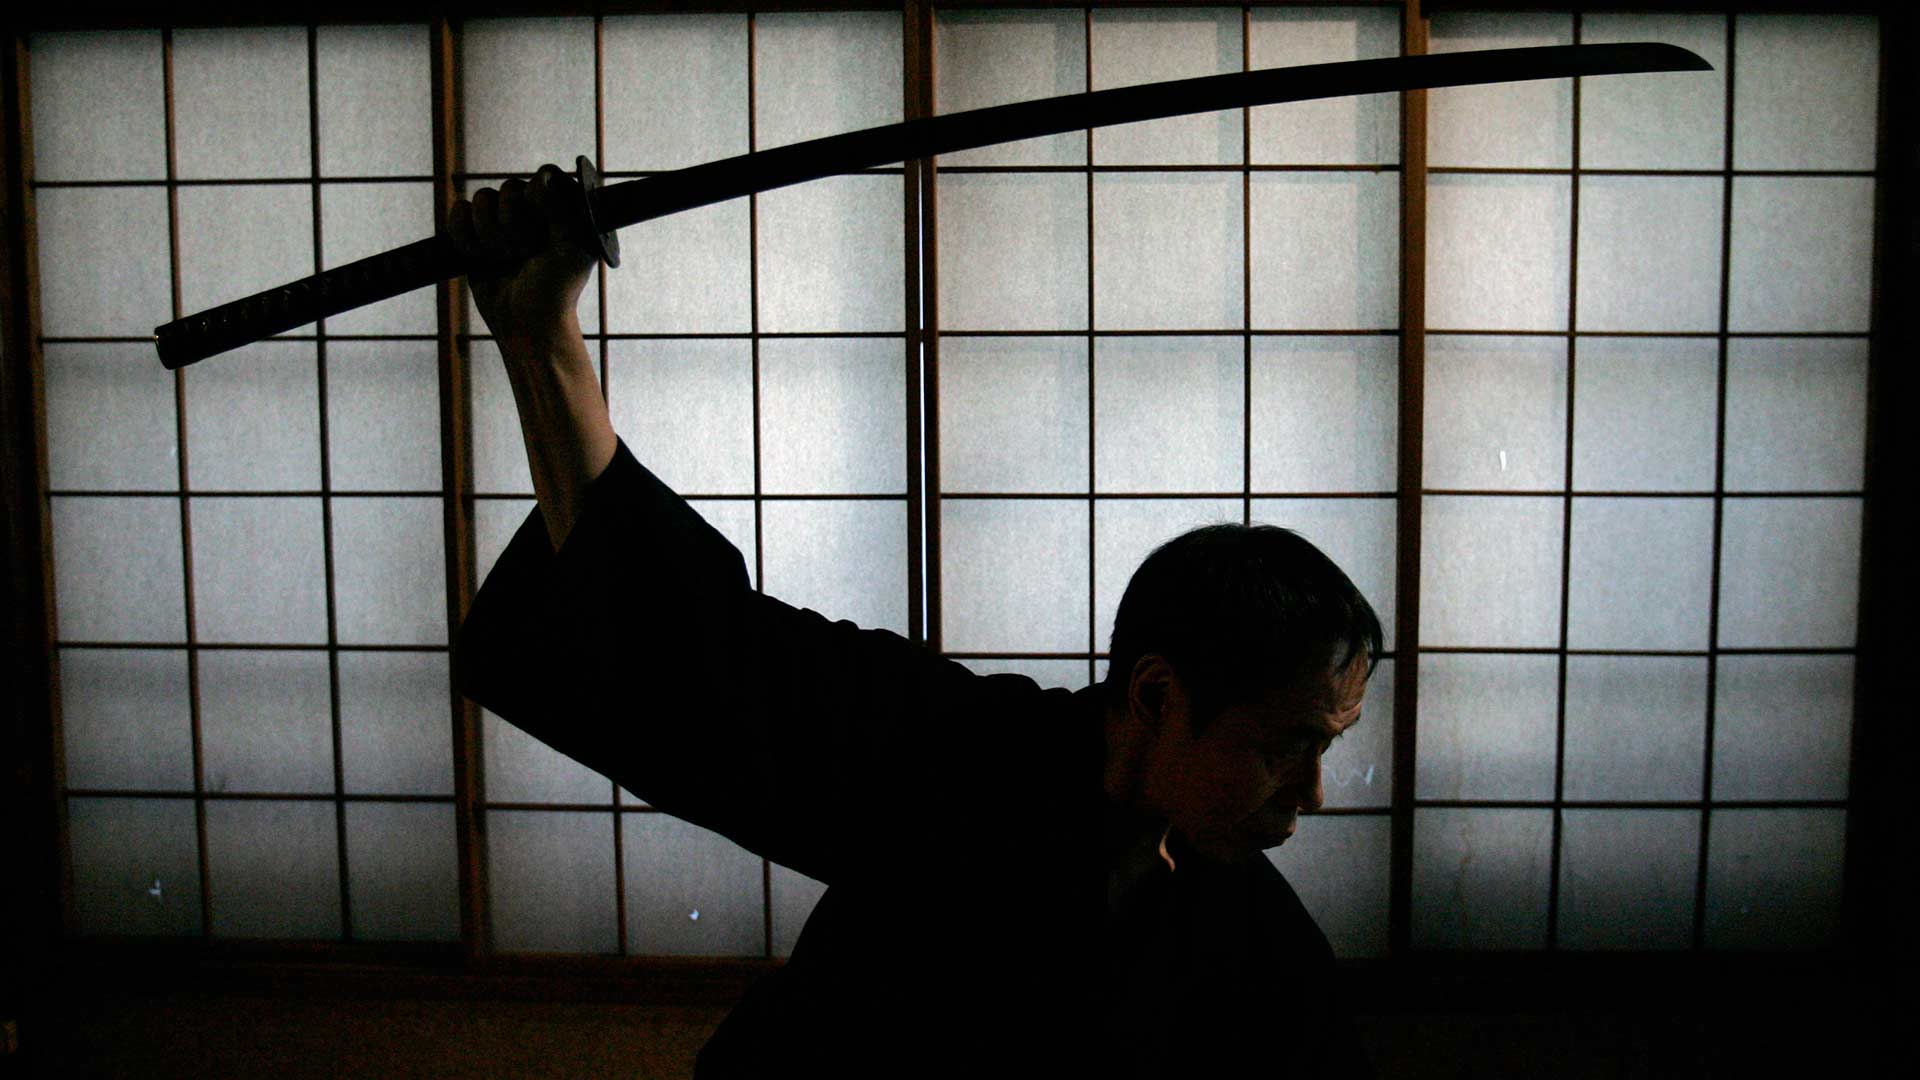 Mueren 3 personas en un ataque con una katana en un santuario de Tokio